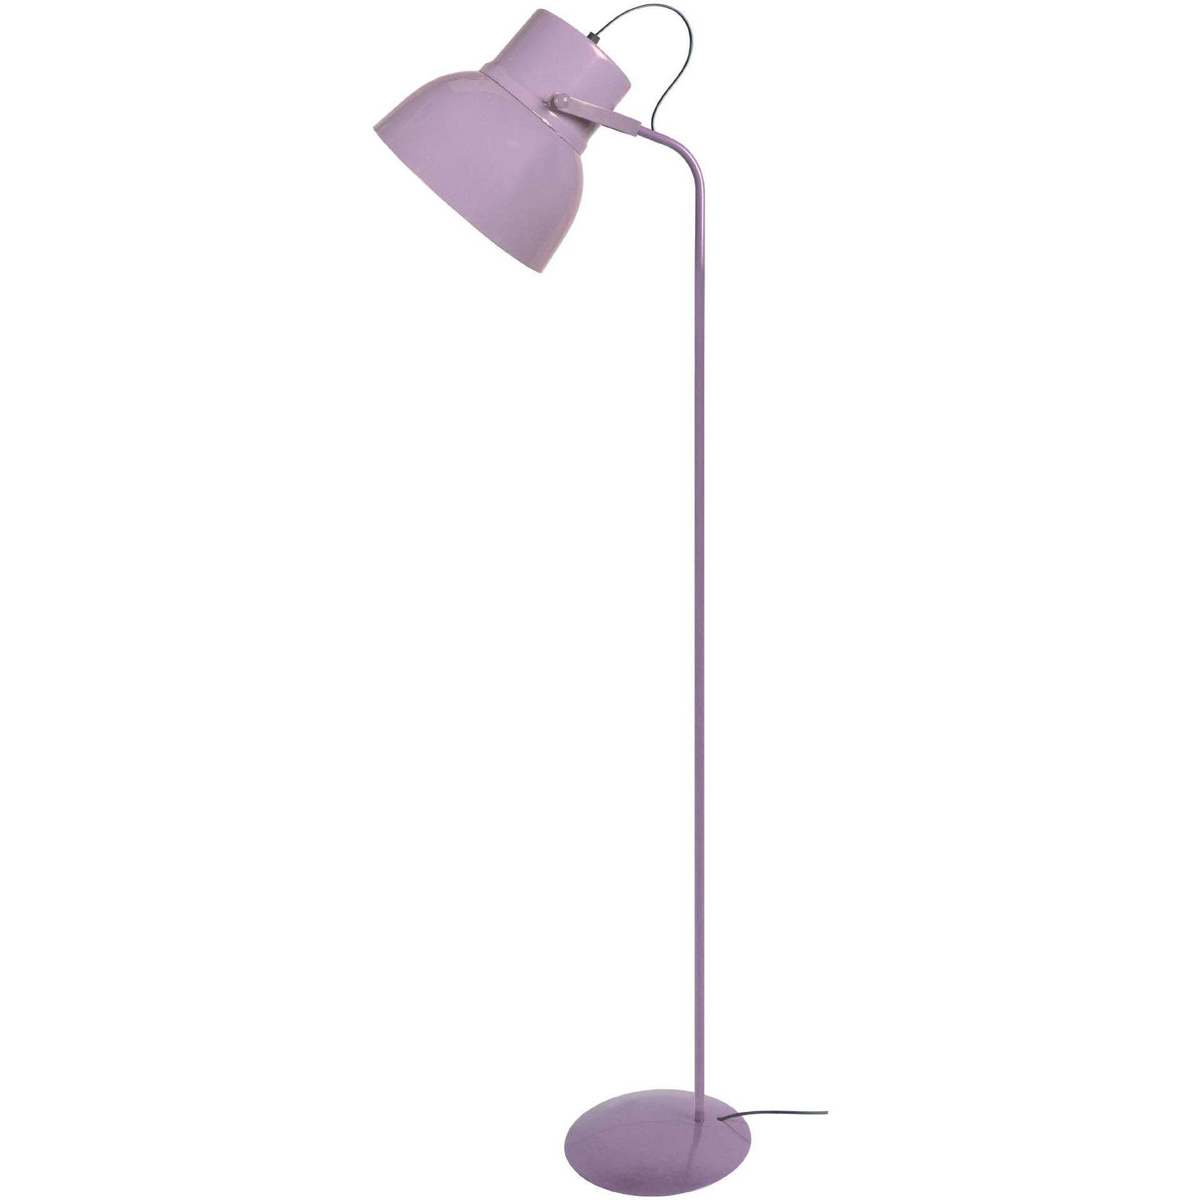 Votre ville doit contenir un minimum de 2 caractères Lampadaires Tosel lampadaire liseuse articulé métal mauve Violet